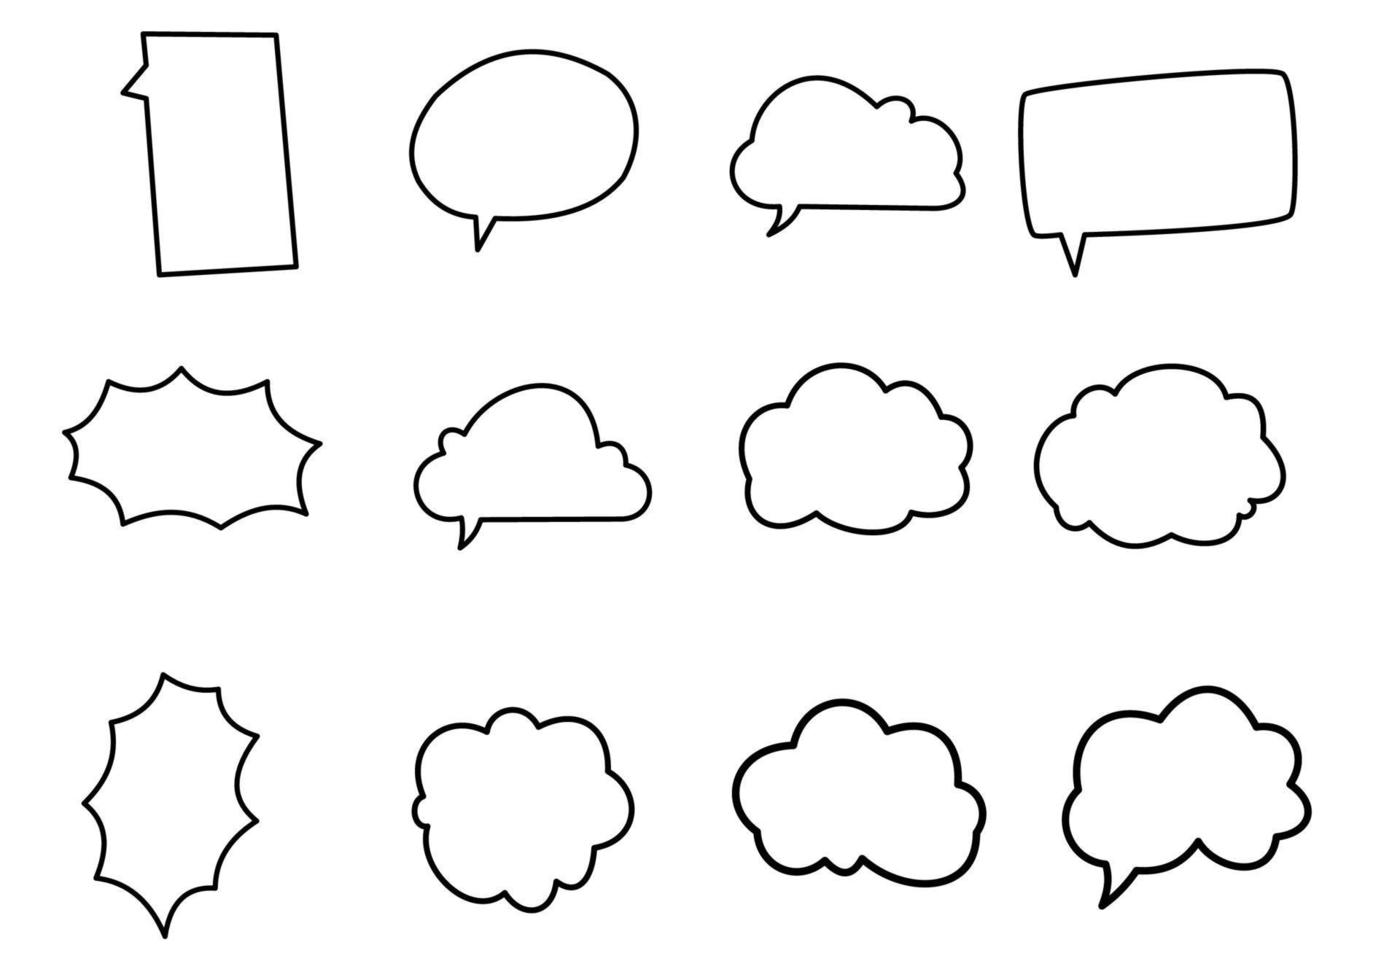 collezione di doodle di bolle di pensiero vettore